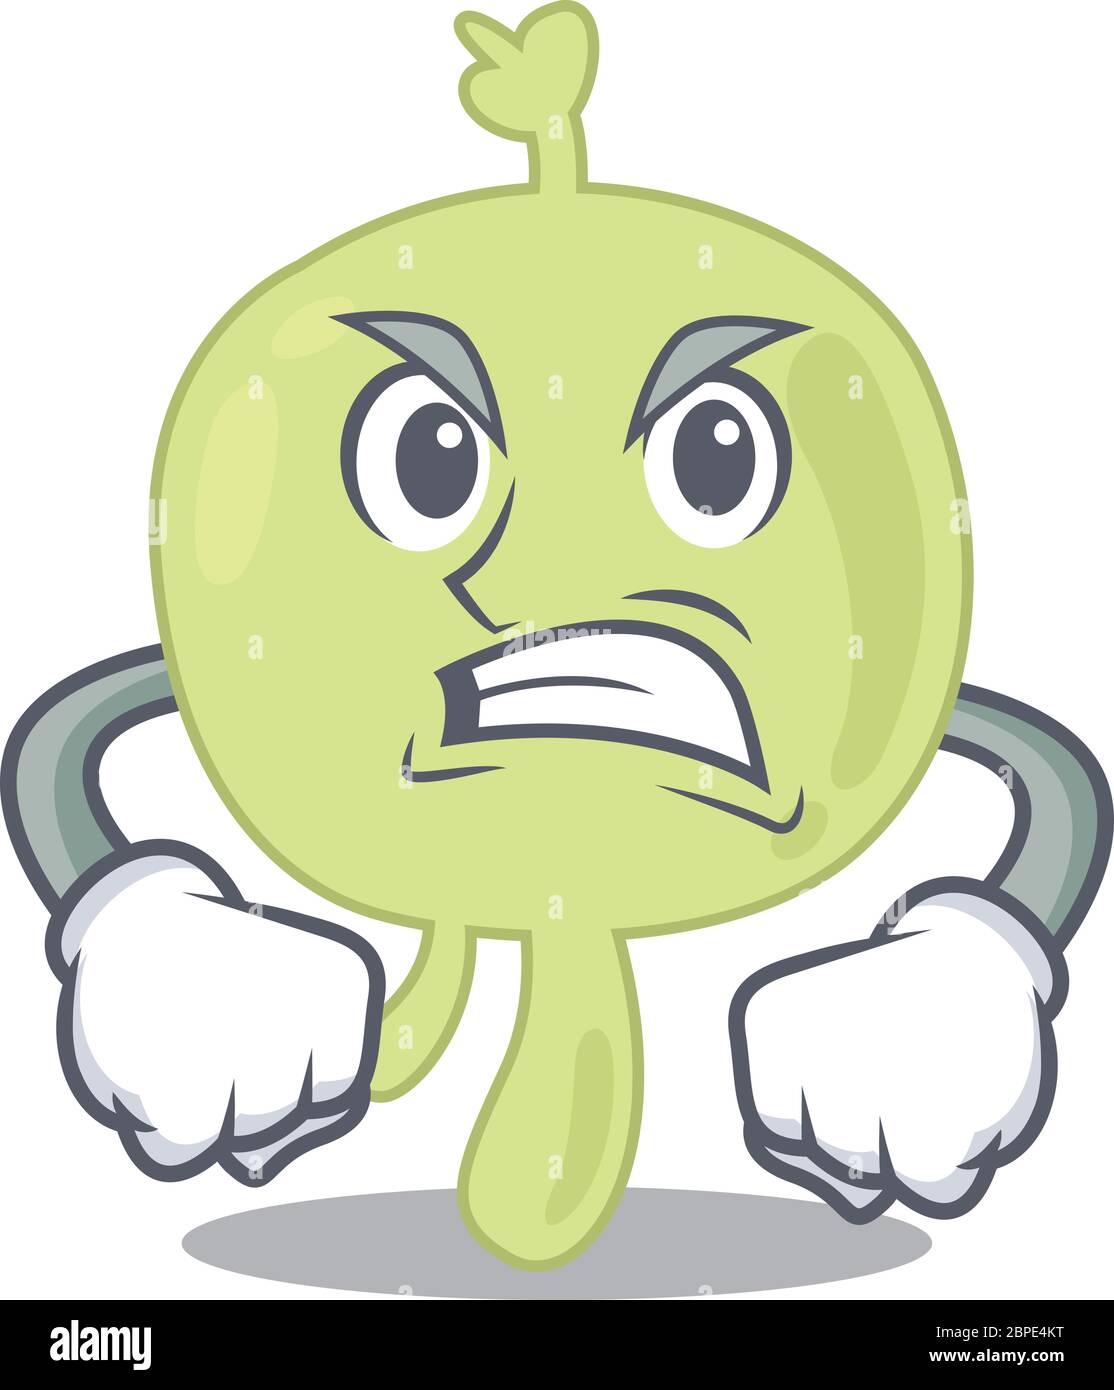 Una imagen de dibujos animados de un ganglio linfático que muestra una cara enojada Ilustración del Vector